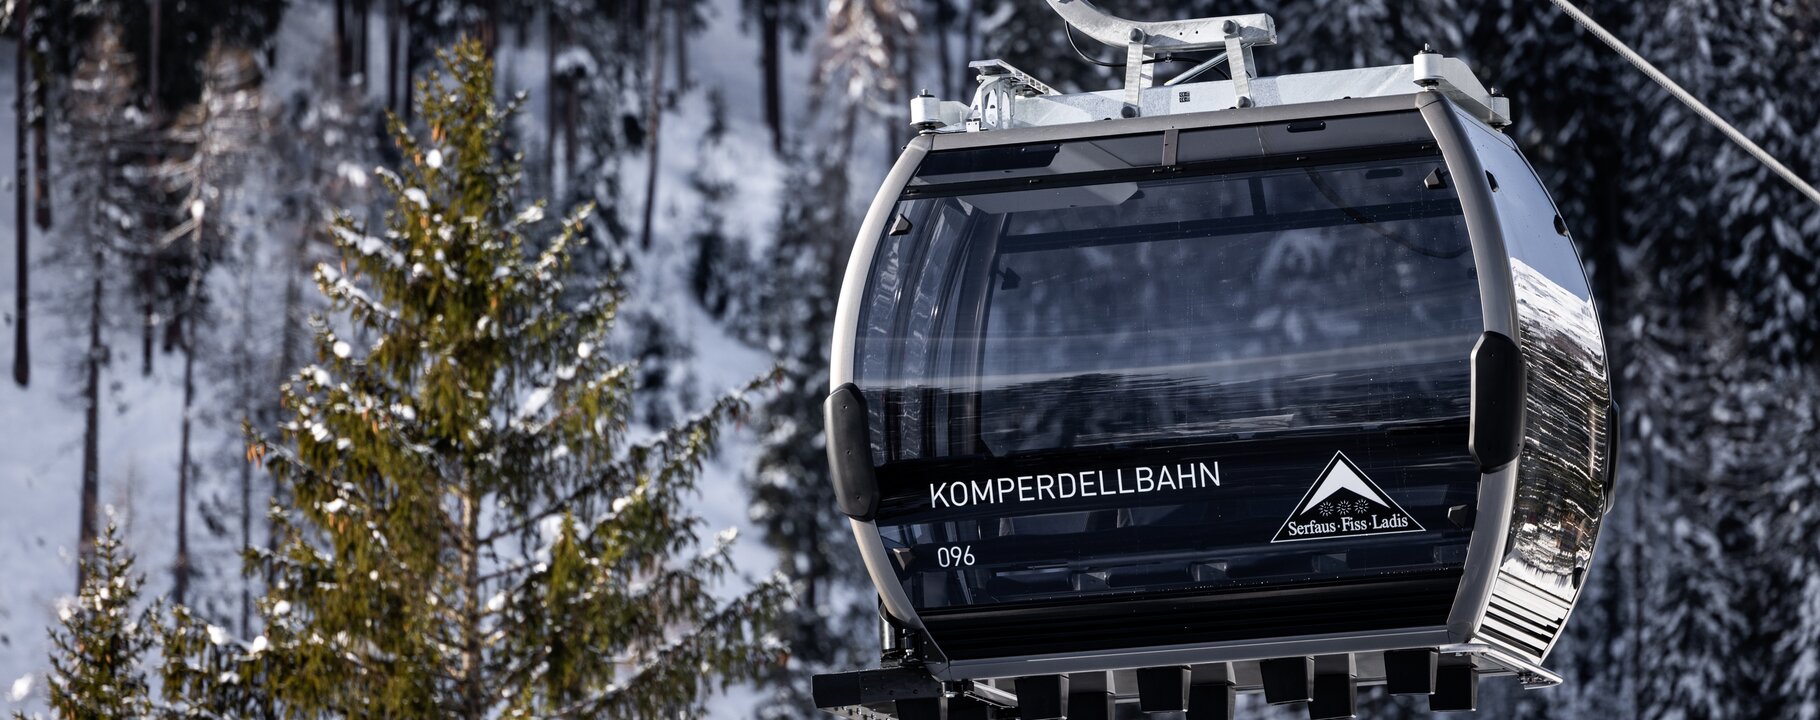 Doppelmayr-Gondel der neuen Komperdellbahn im Skigebiet Serfaus-Fiss-Ladis | © Seilbahn Komperdell GmbH